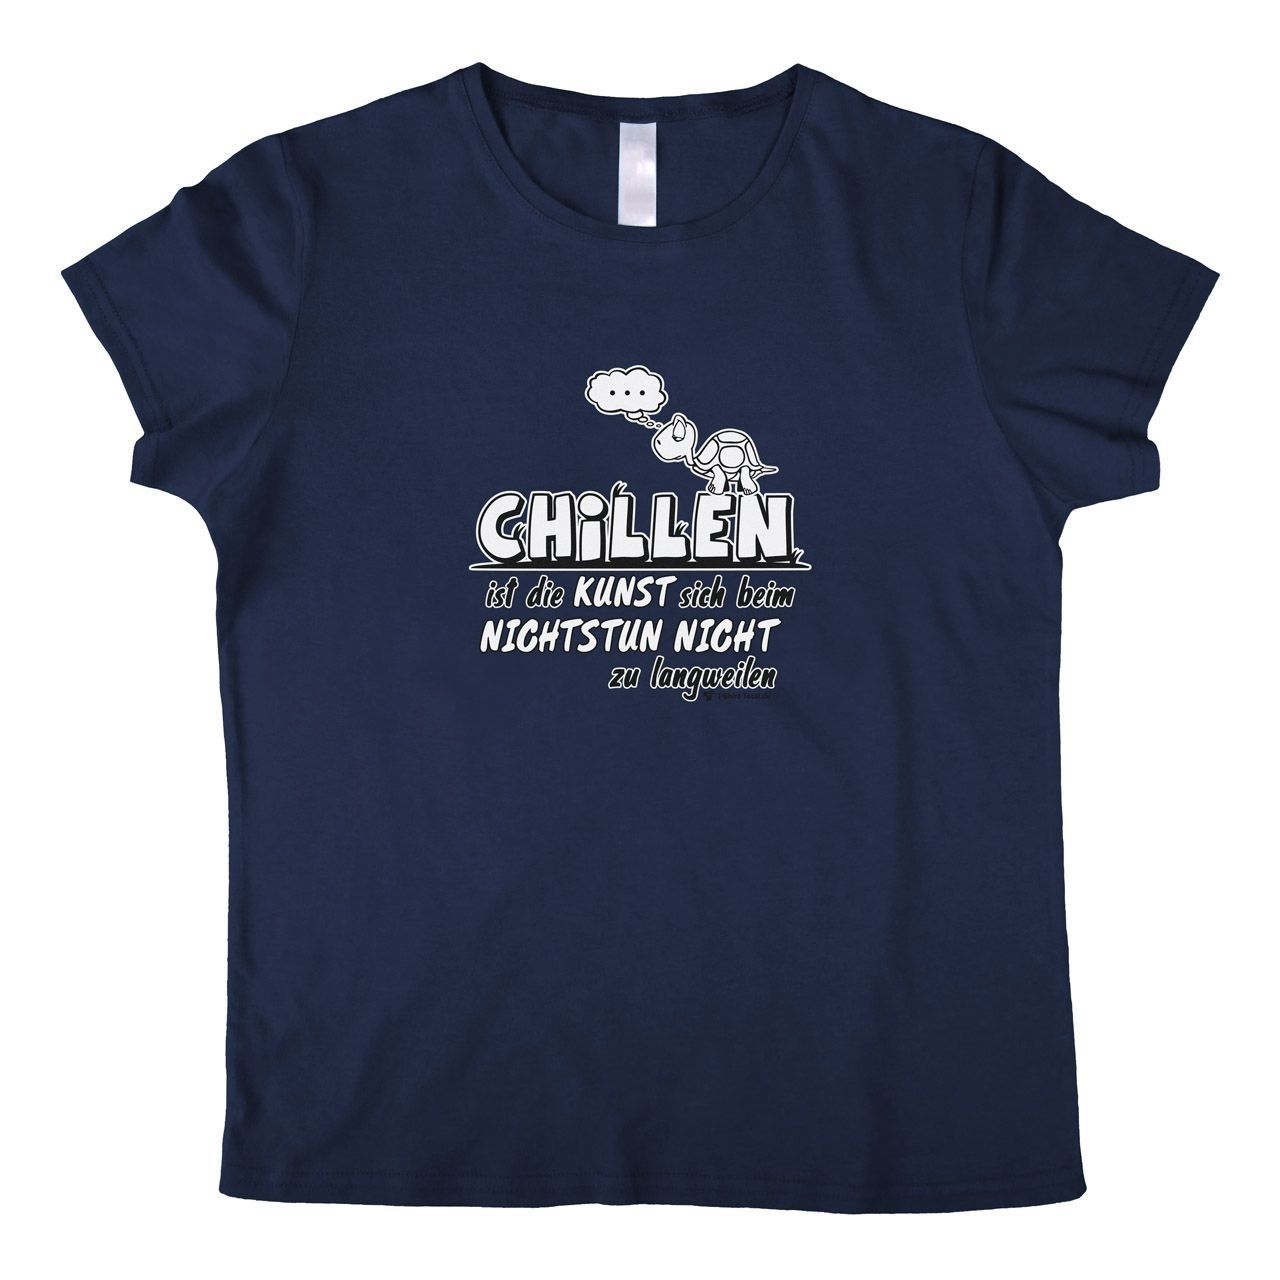 Chillen Woman T-Shirt navy Small